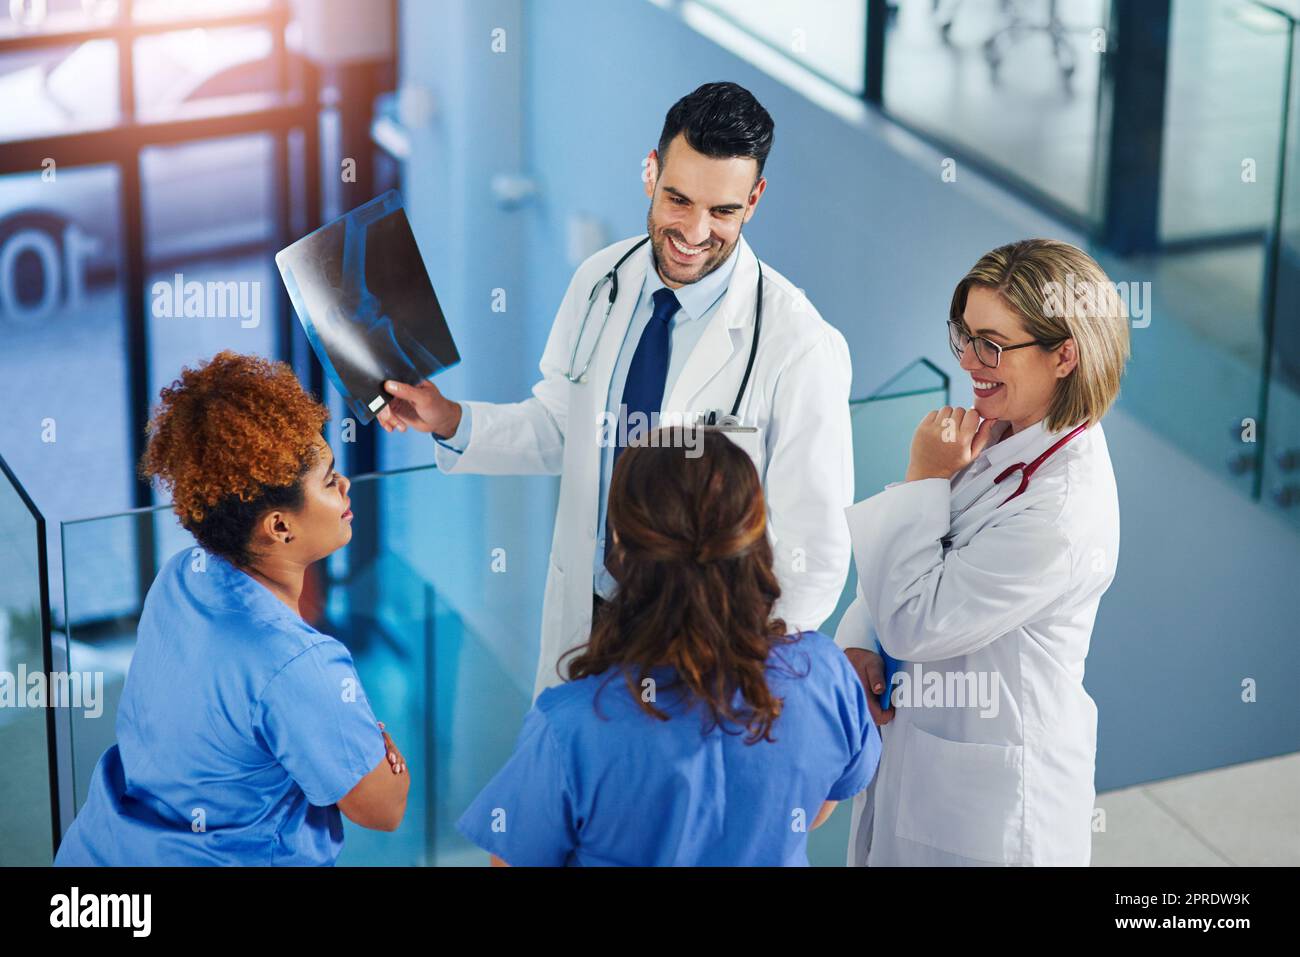 Teamarbeit ermöglicht es ihnen, die beste Behandlung zu finden. Eine Gruppe von Ärzten, die Röntgenaufnahmen in einem Krankenhaus analysieren. Stockfoto